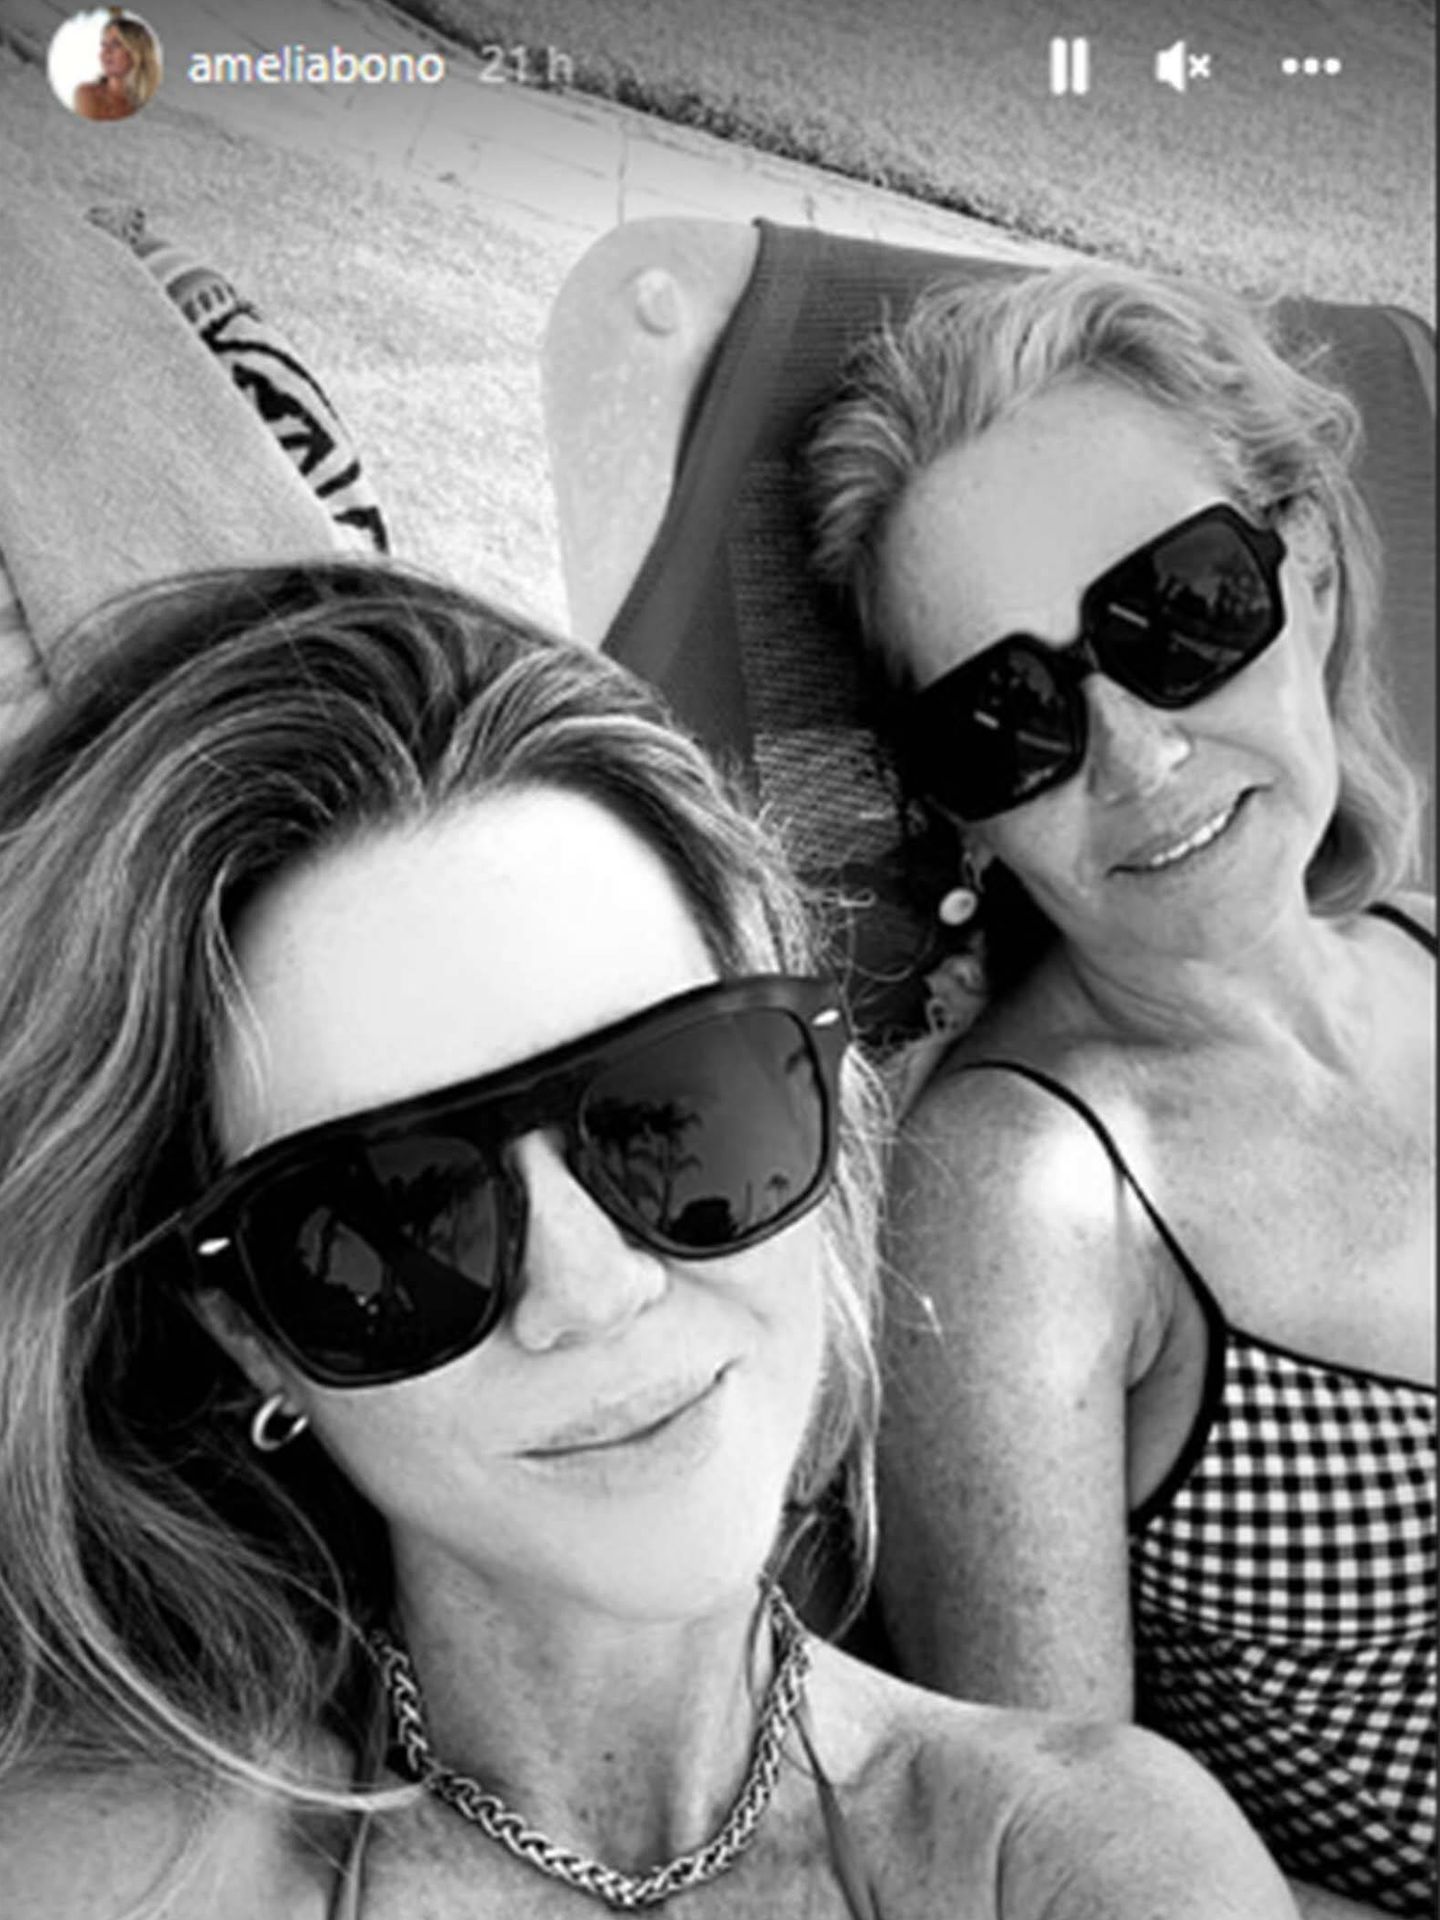 Amelia Bono posa durante sus vacaciones junto a su madre. (Instagram/@ameliabono)